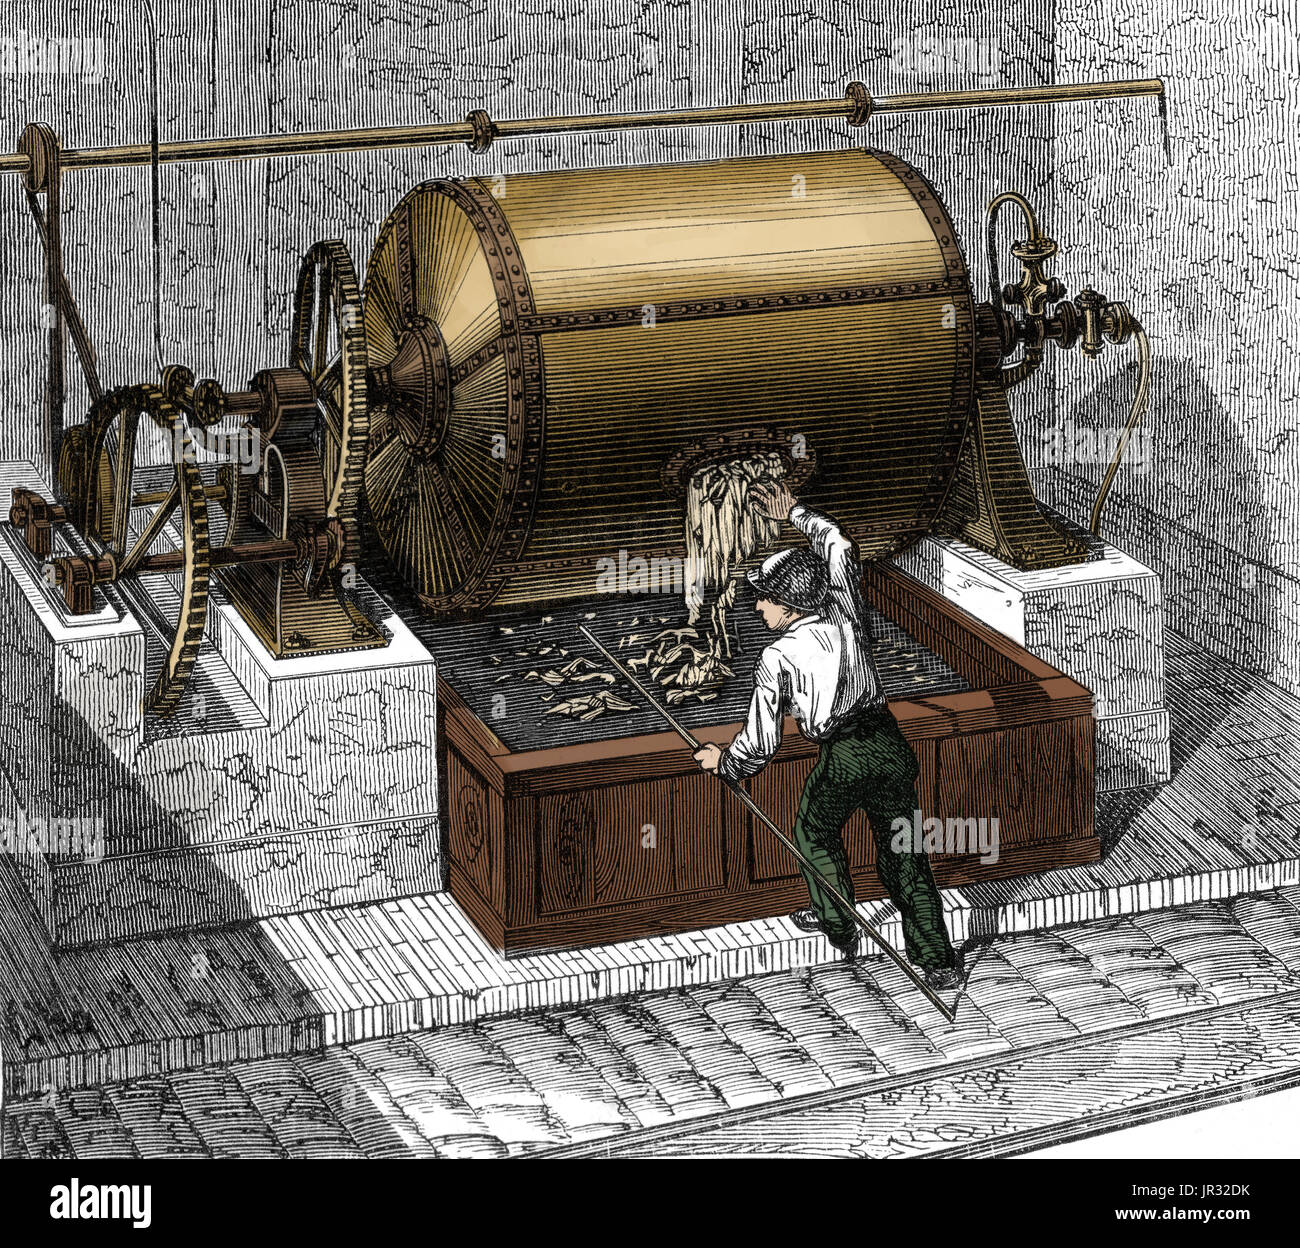 La fabrication du papier Papier chiffon,linge,19e siècle Banque D'Images